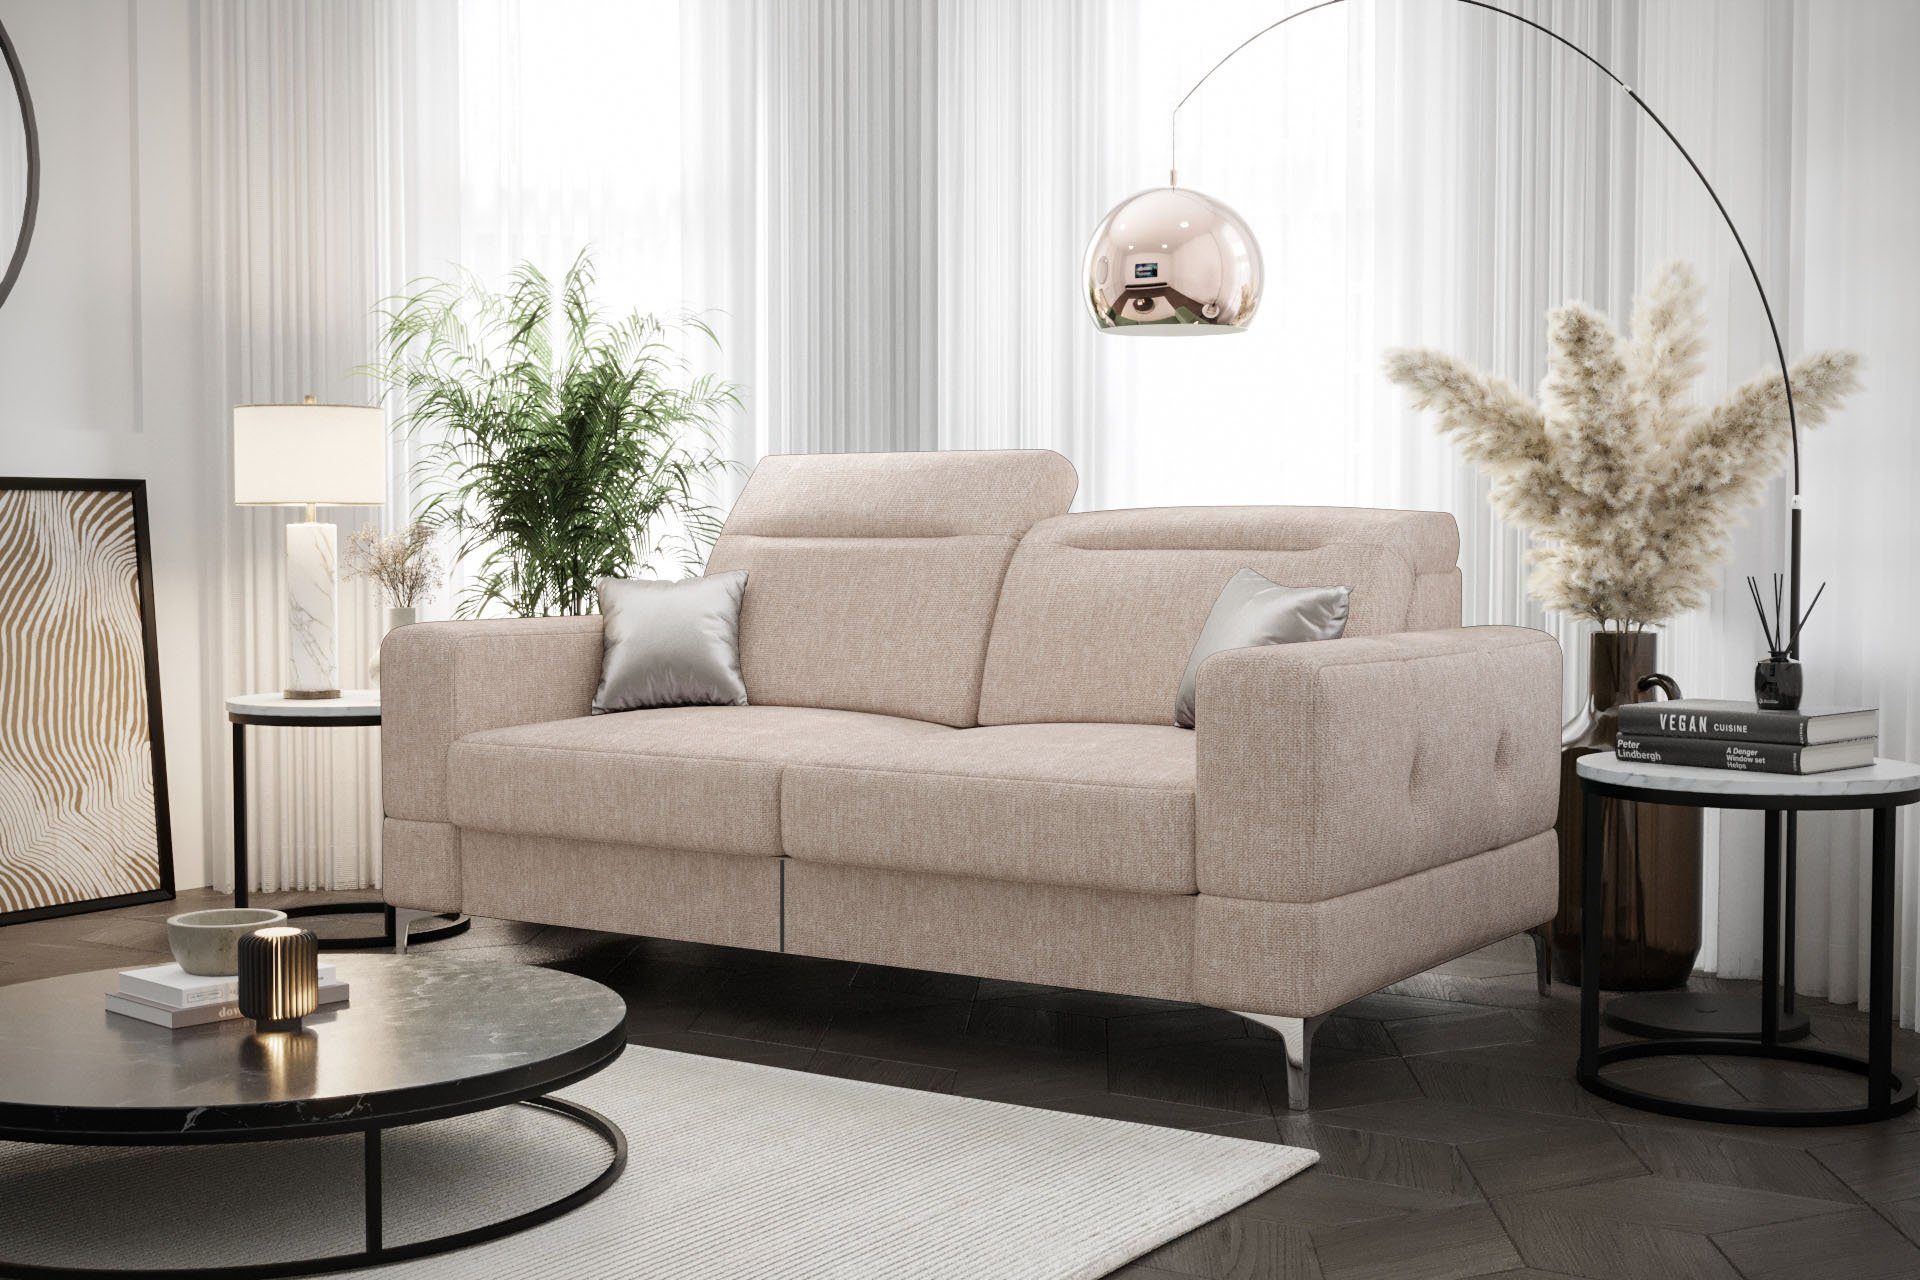 Möbel für mit Dich Webstoff Gemma Farbauswahl Sofa Relax, Relaxfunktion, 2 mit Malibu elektrischer 04 beige Sofa Modernes Stoff-und